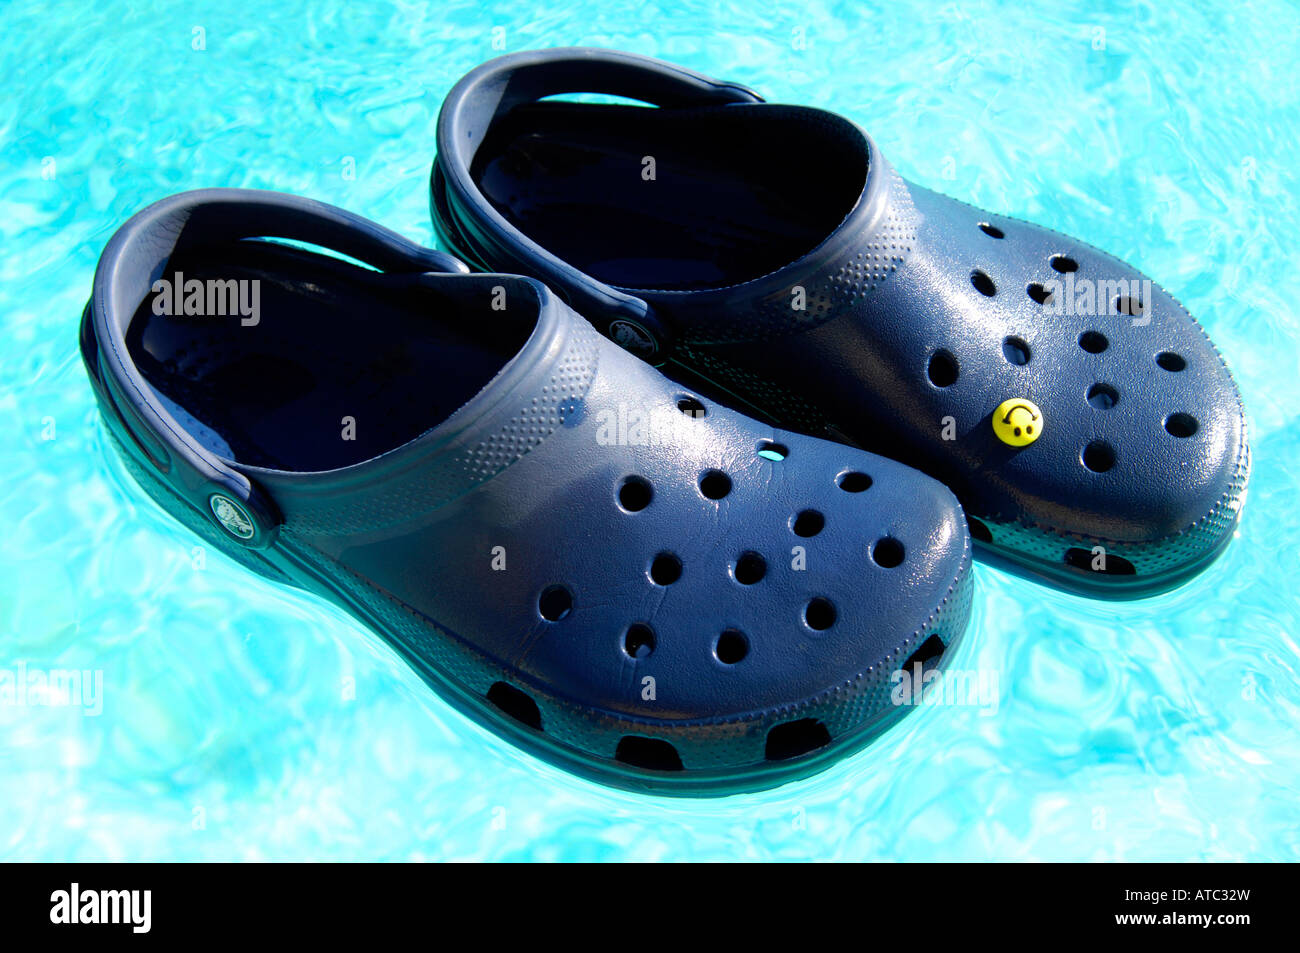 pool blue crocs